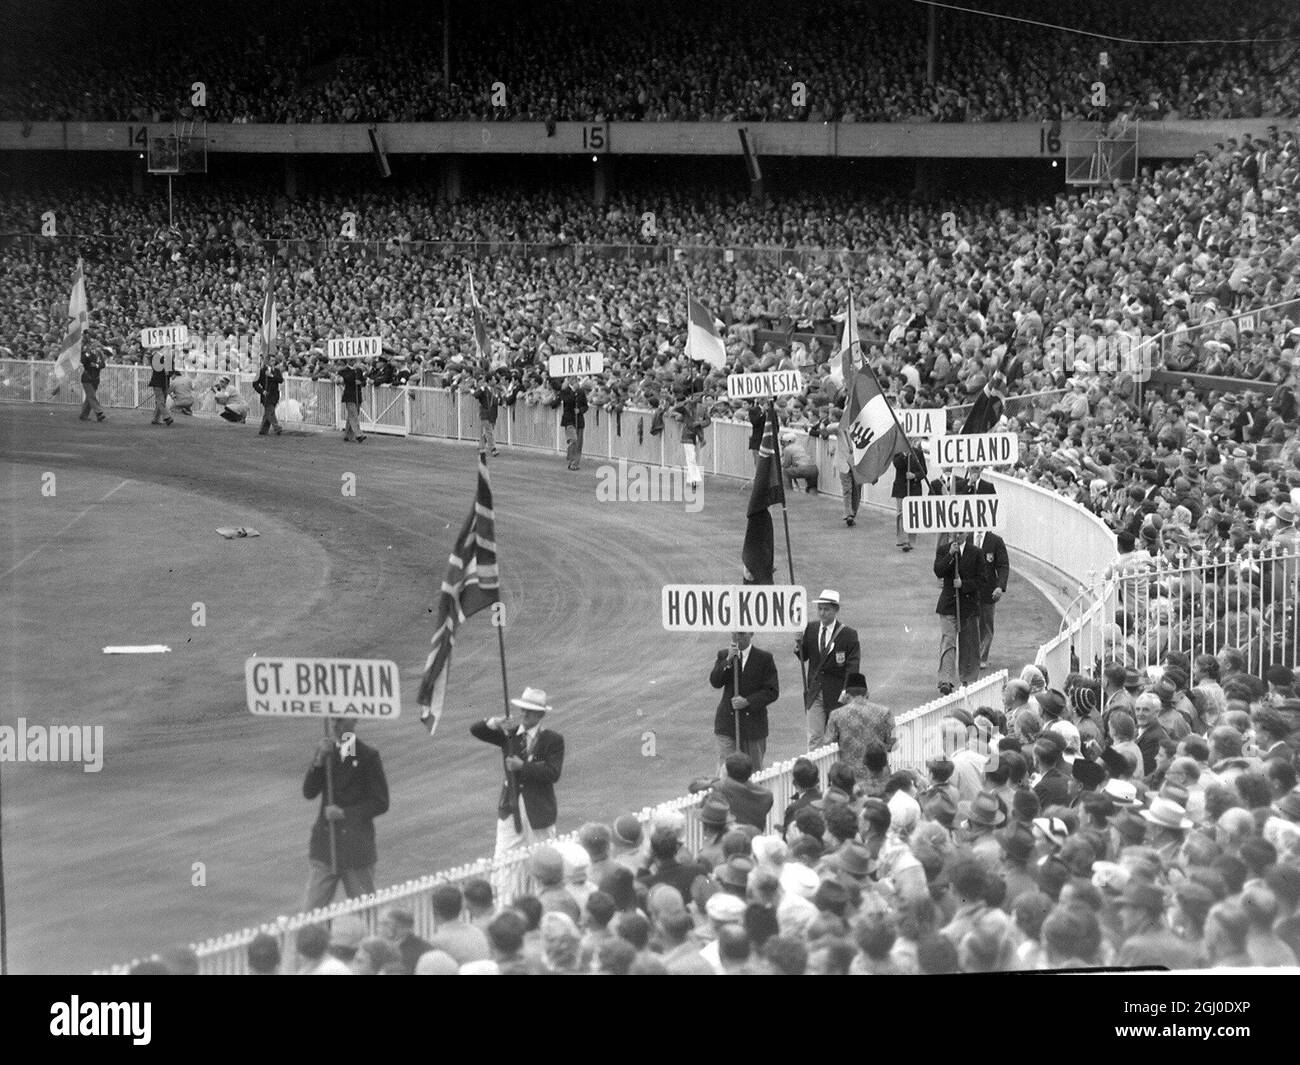 Melbourne Olympic Games 1956 gli standard e le bandiere delle nazioni in competizione sono trasportati intorno al campo di Cricket di Melbourne durante la cerimonia di chiusura. 13 dicembre 1956 Foto Stock